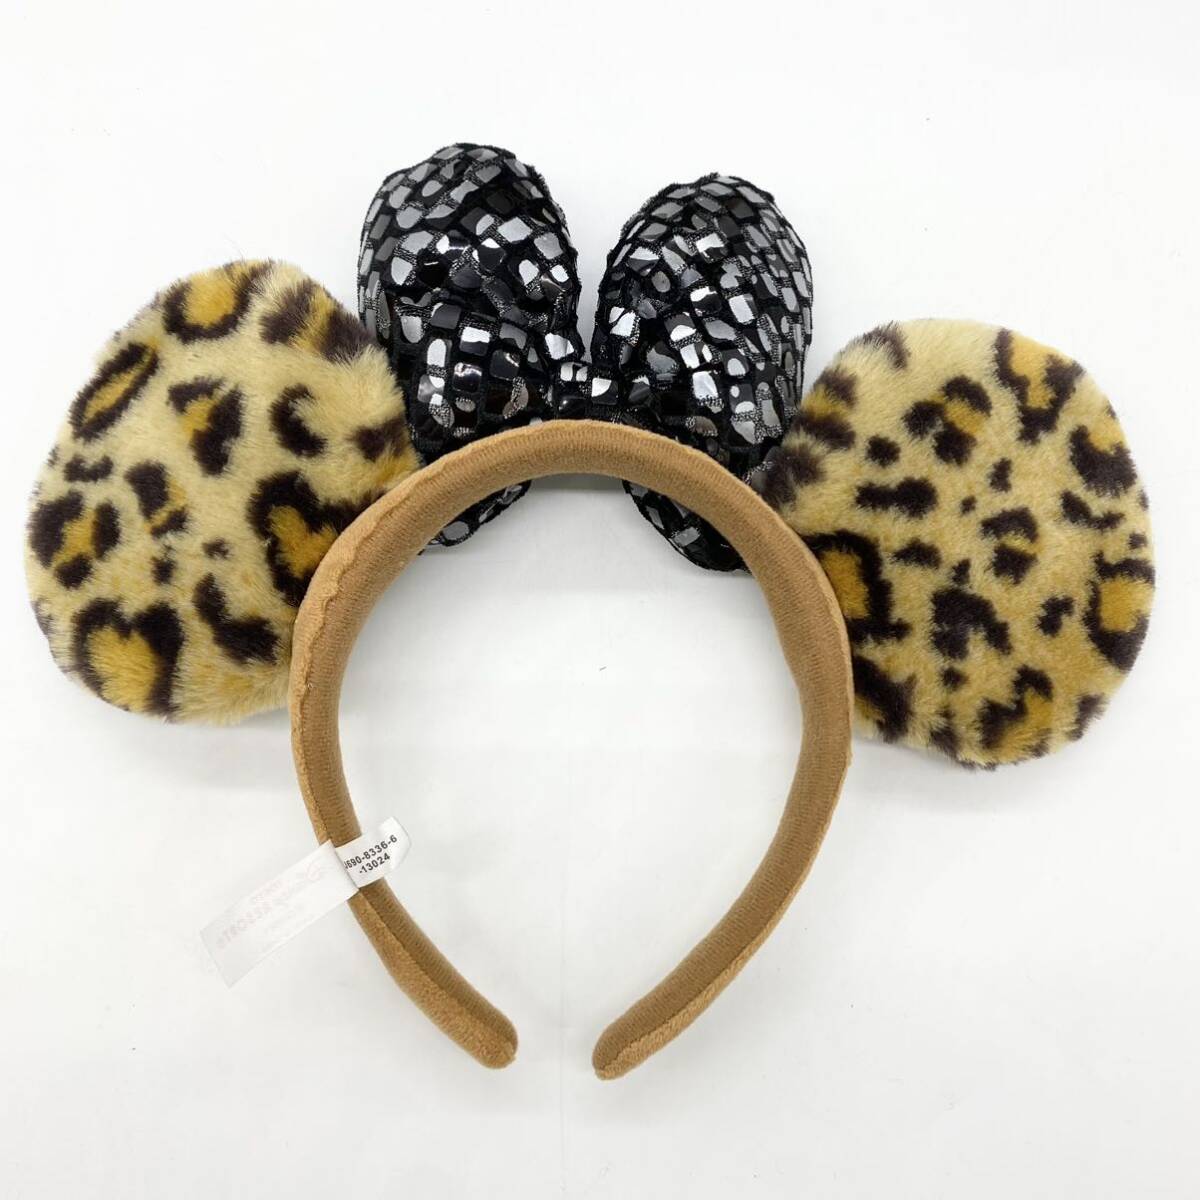 [ прекрасный товар ] Disney Disney вентилятор колпак лента-ободок Minnie Mouse леопардовая расцветка Leopard TDL 2 шт. комплект 